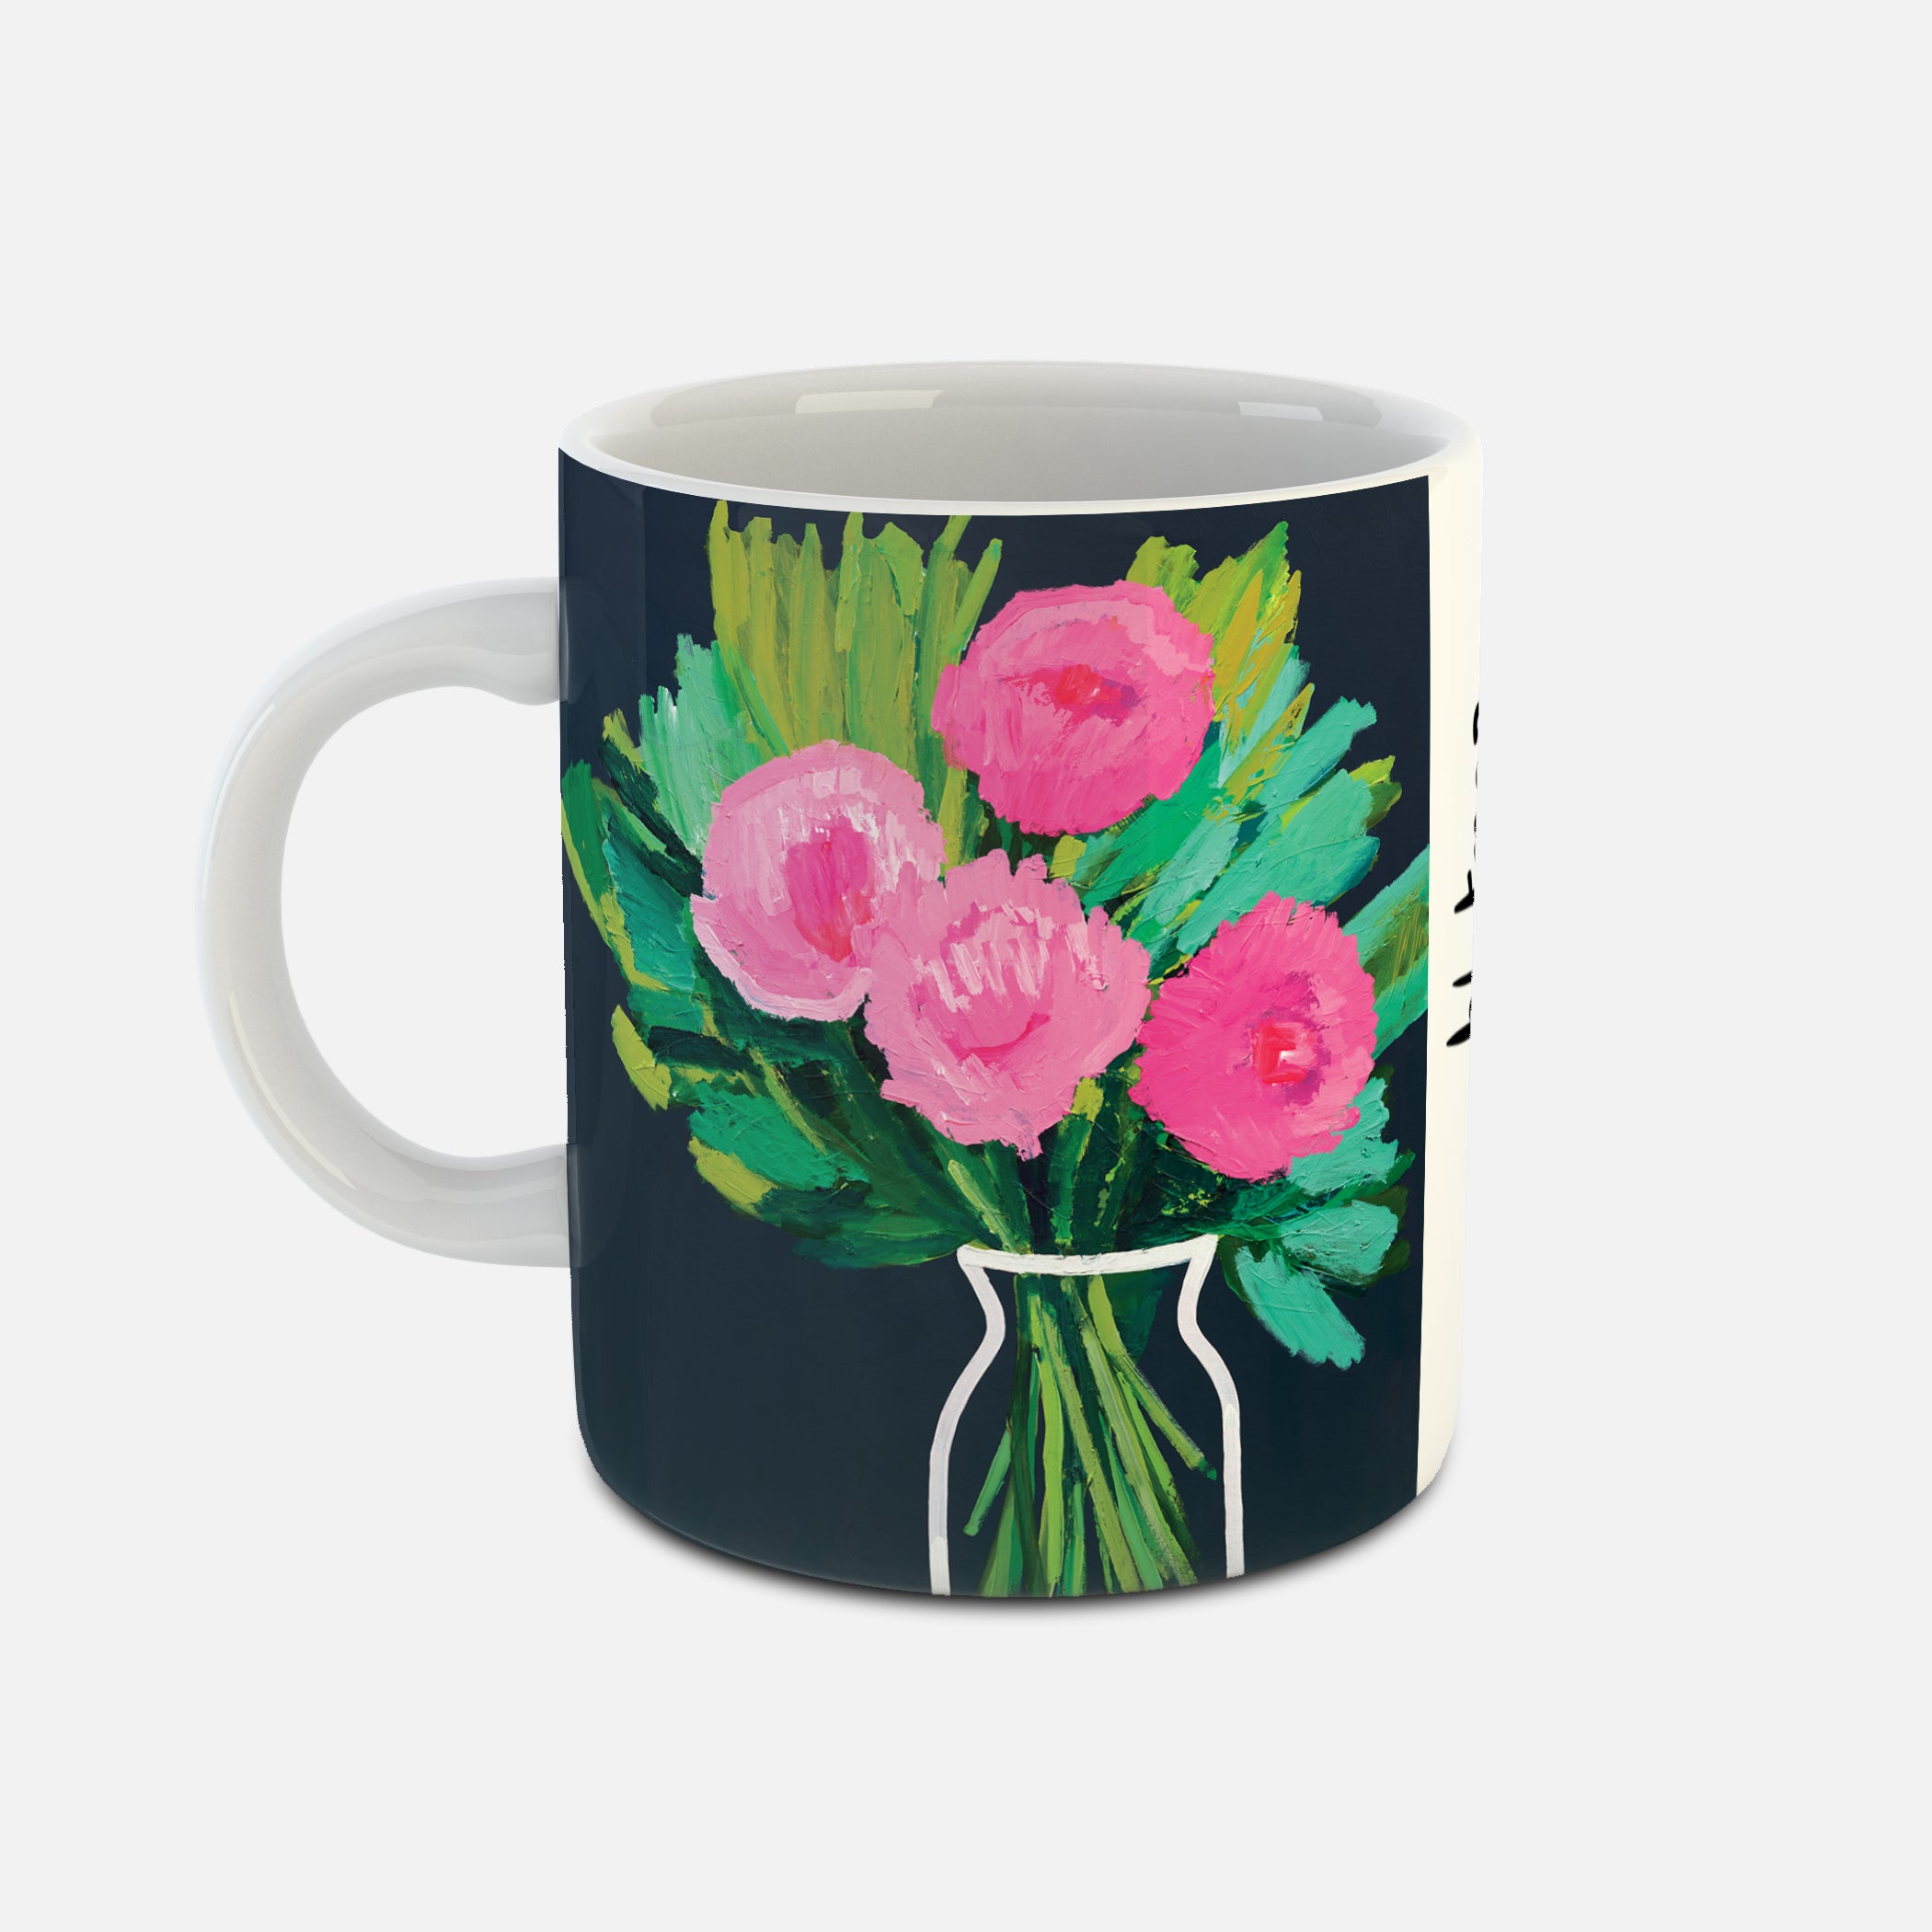 Amoosh - Ceramic Mug